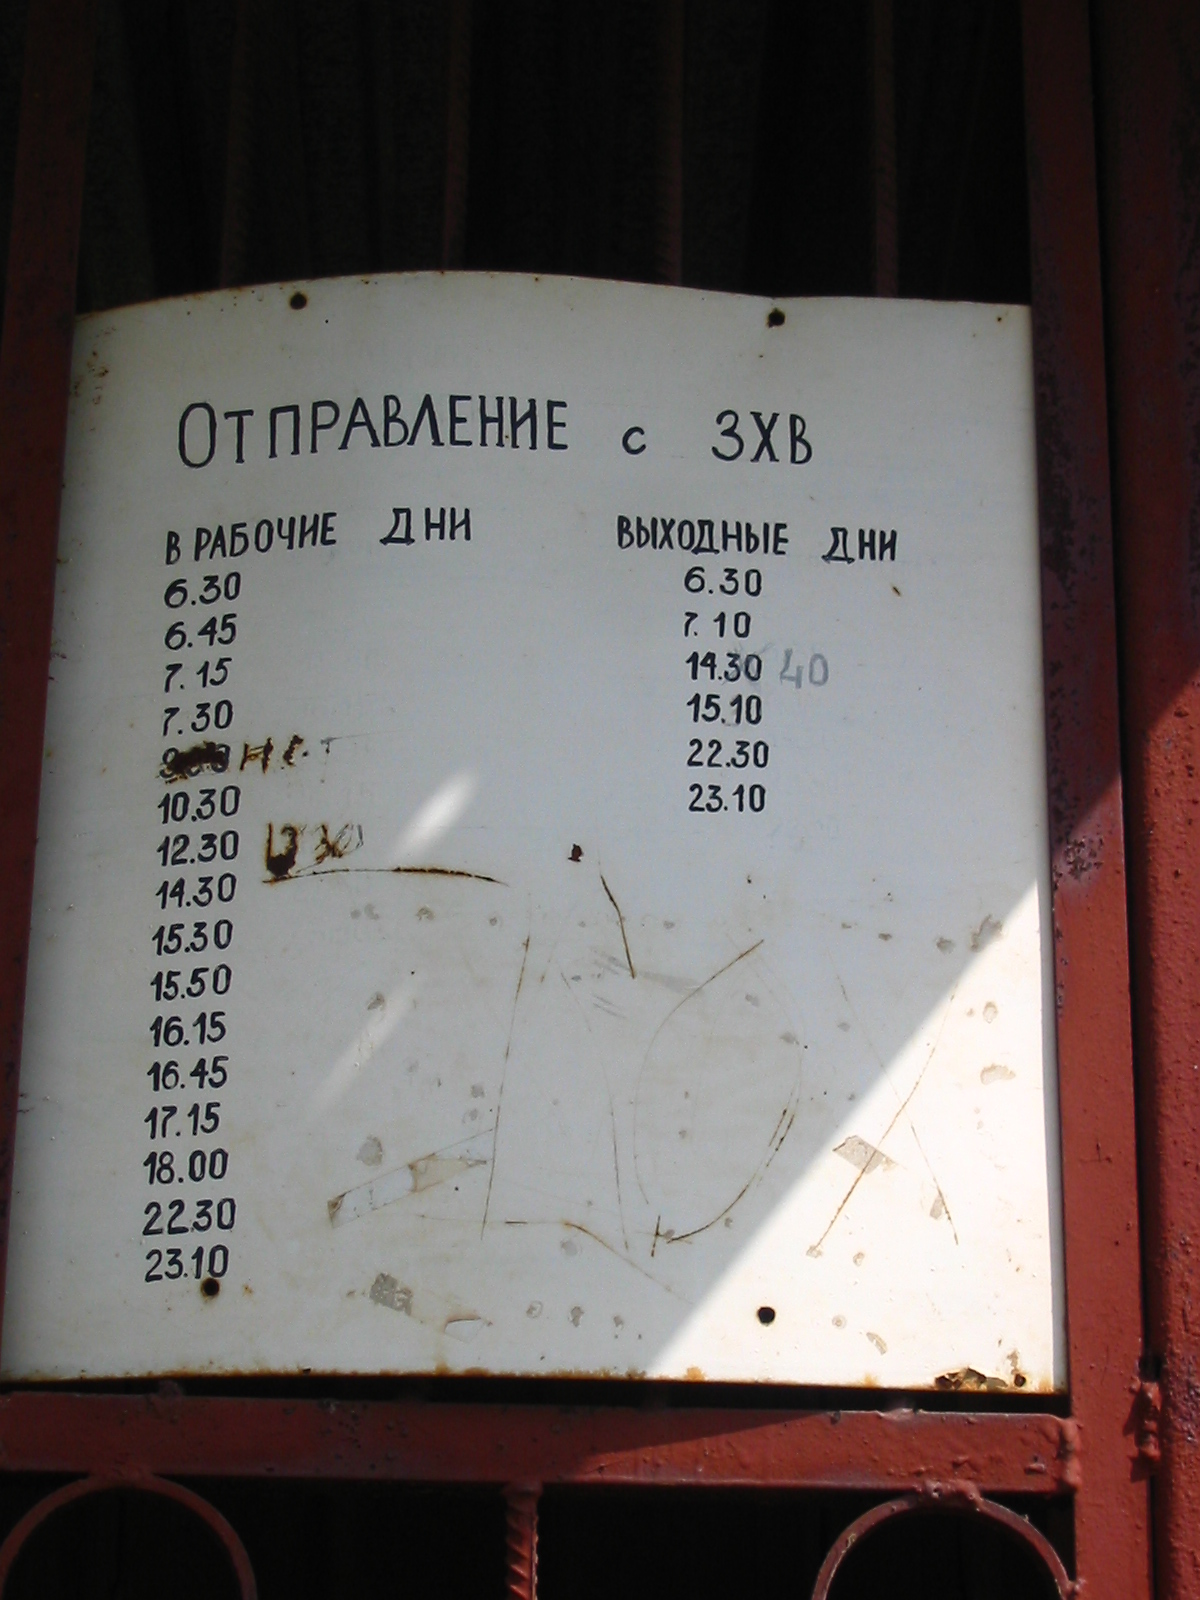 Расписание трамвая в 2004 году на самом дальнем кольце. Фотографировать на нём я испугался